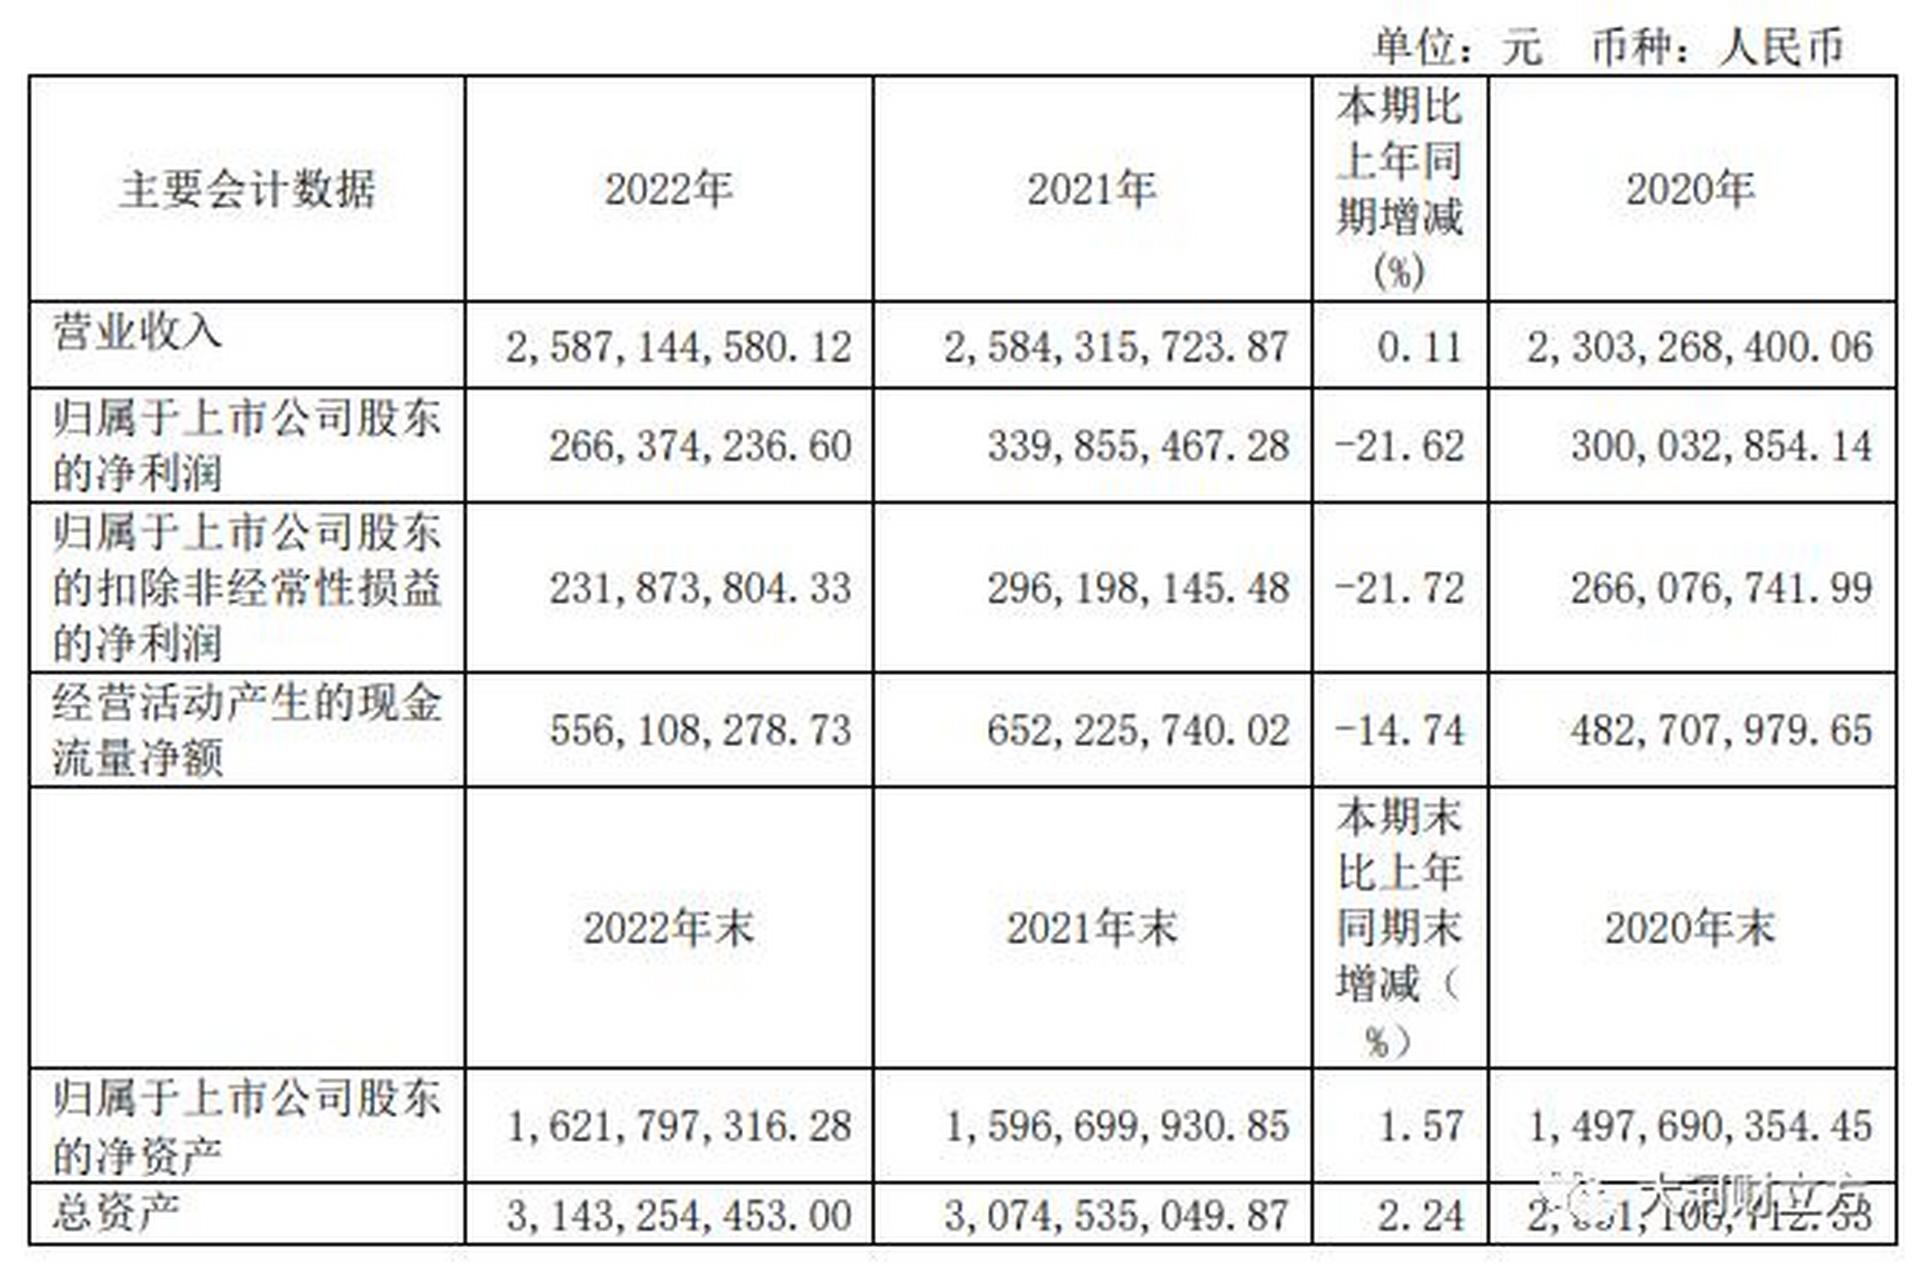 元祖股份2022年实现净利润266亿元,同比下降21